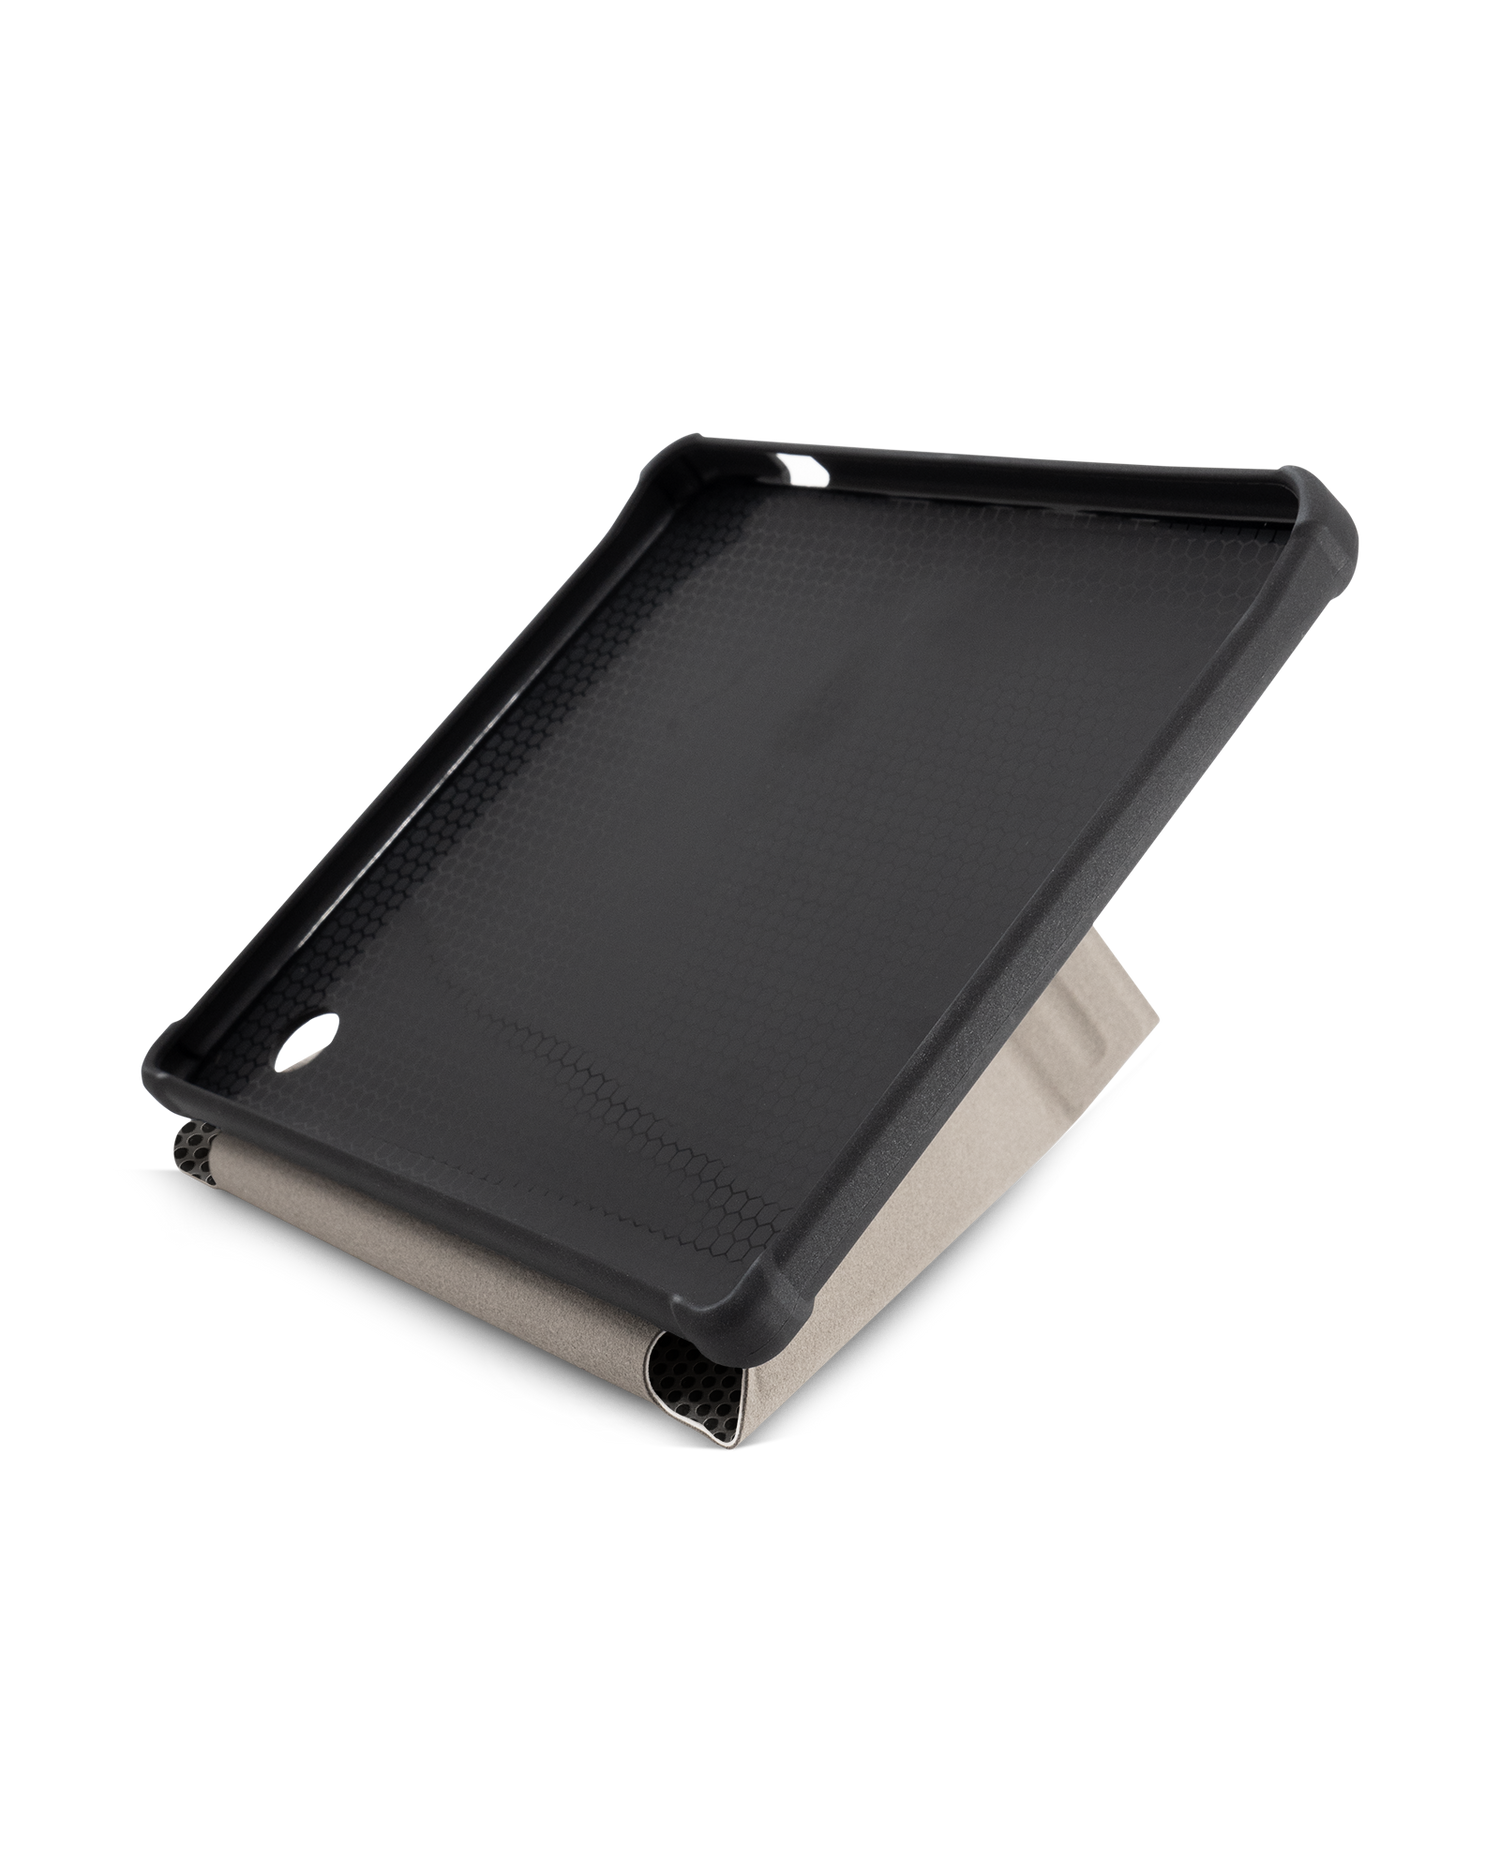 Carbon II eBook-Reader Smart Case für tolino vision 5 (2019): Aufgestellt im Querformat Innenansicht